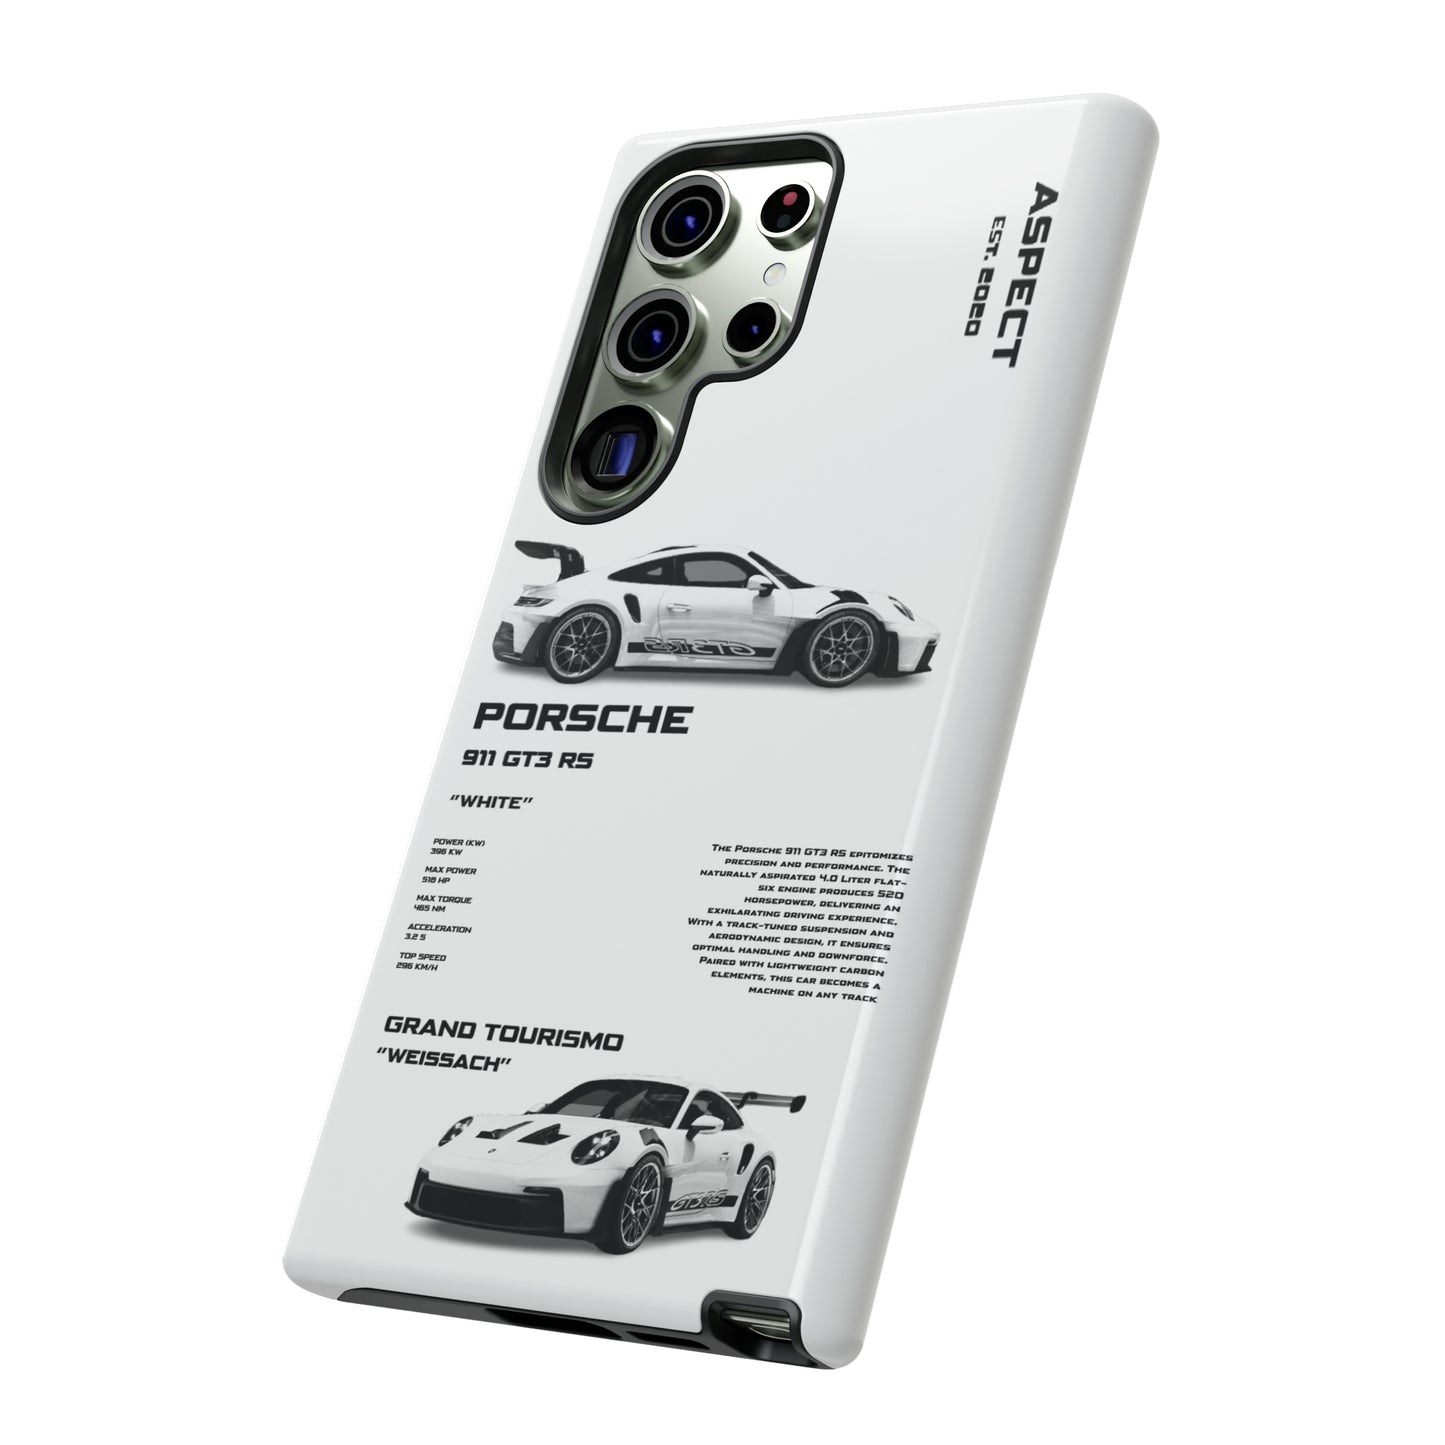 Porsche 911 GT3 RS White (Samsung)